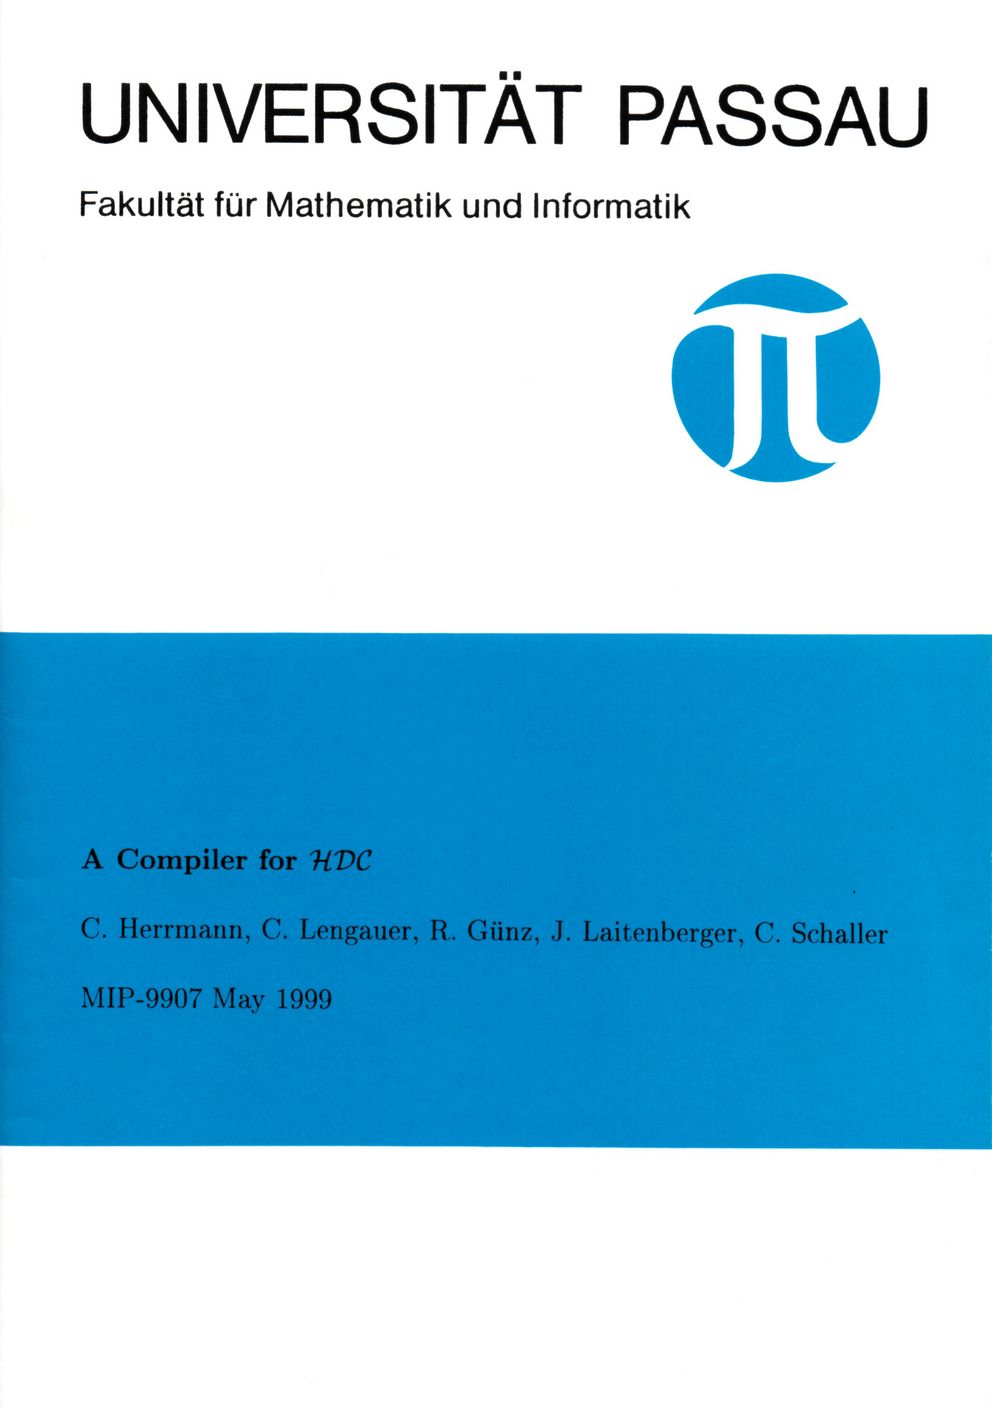 Technischer Bericht der Fakultät für Informatik und Mathematik